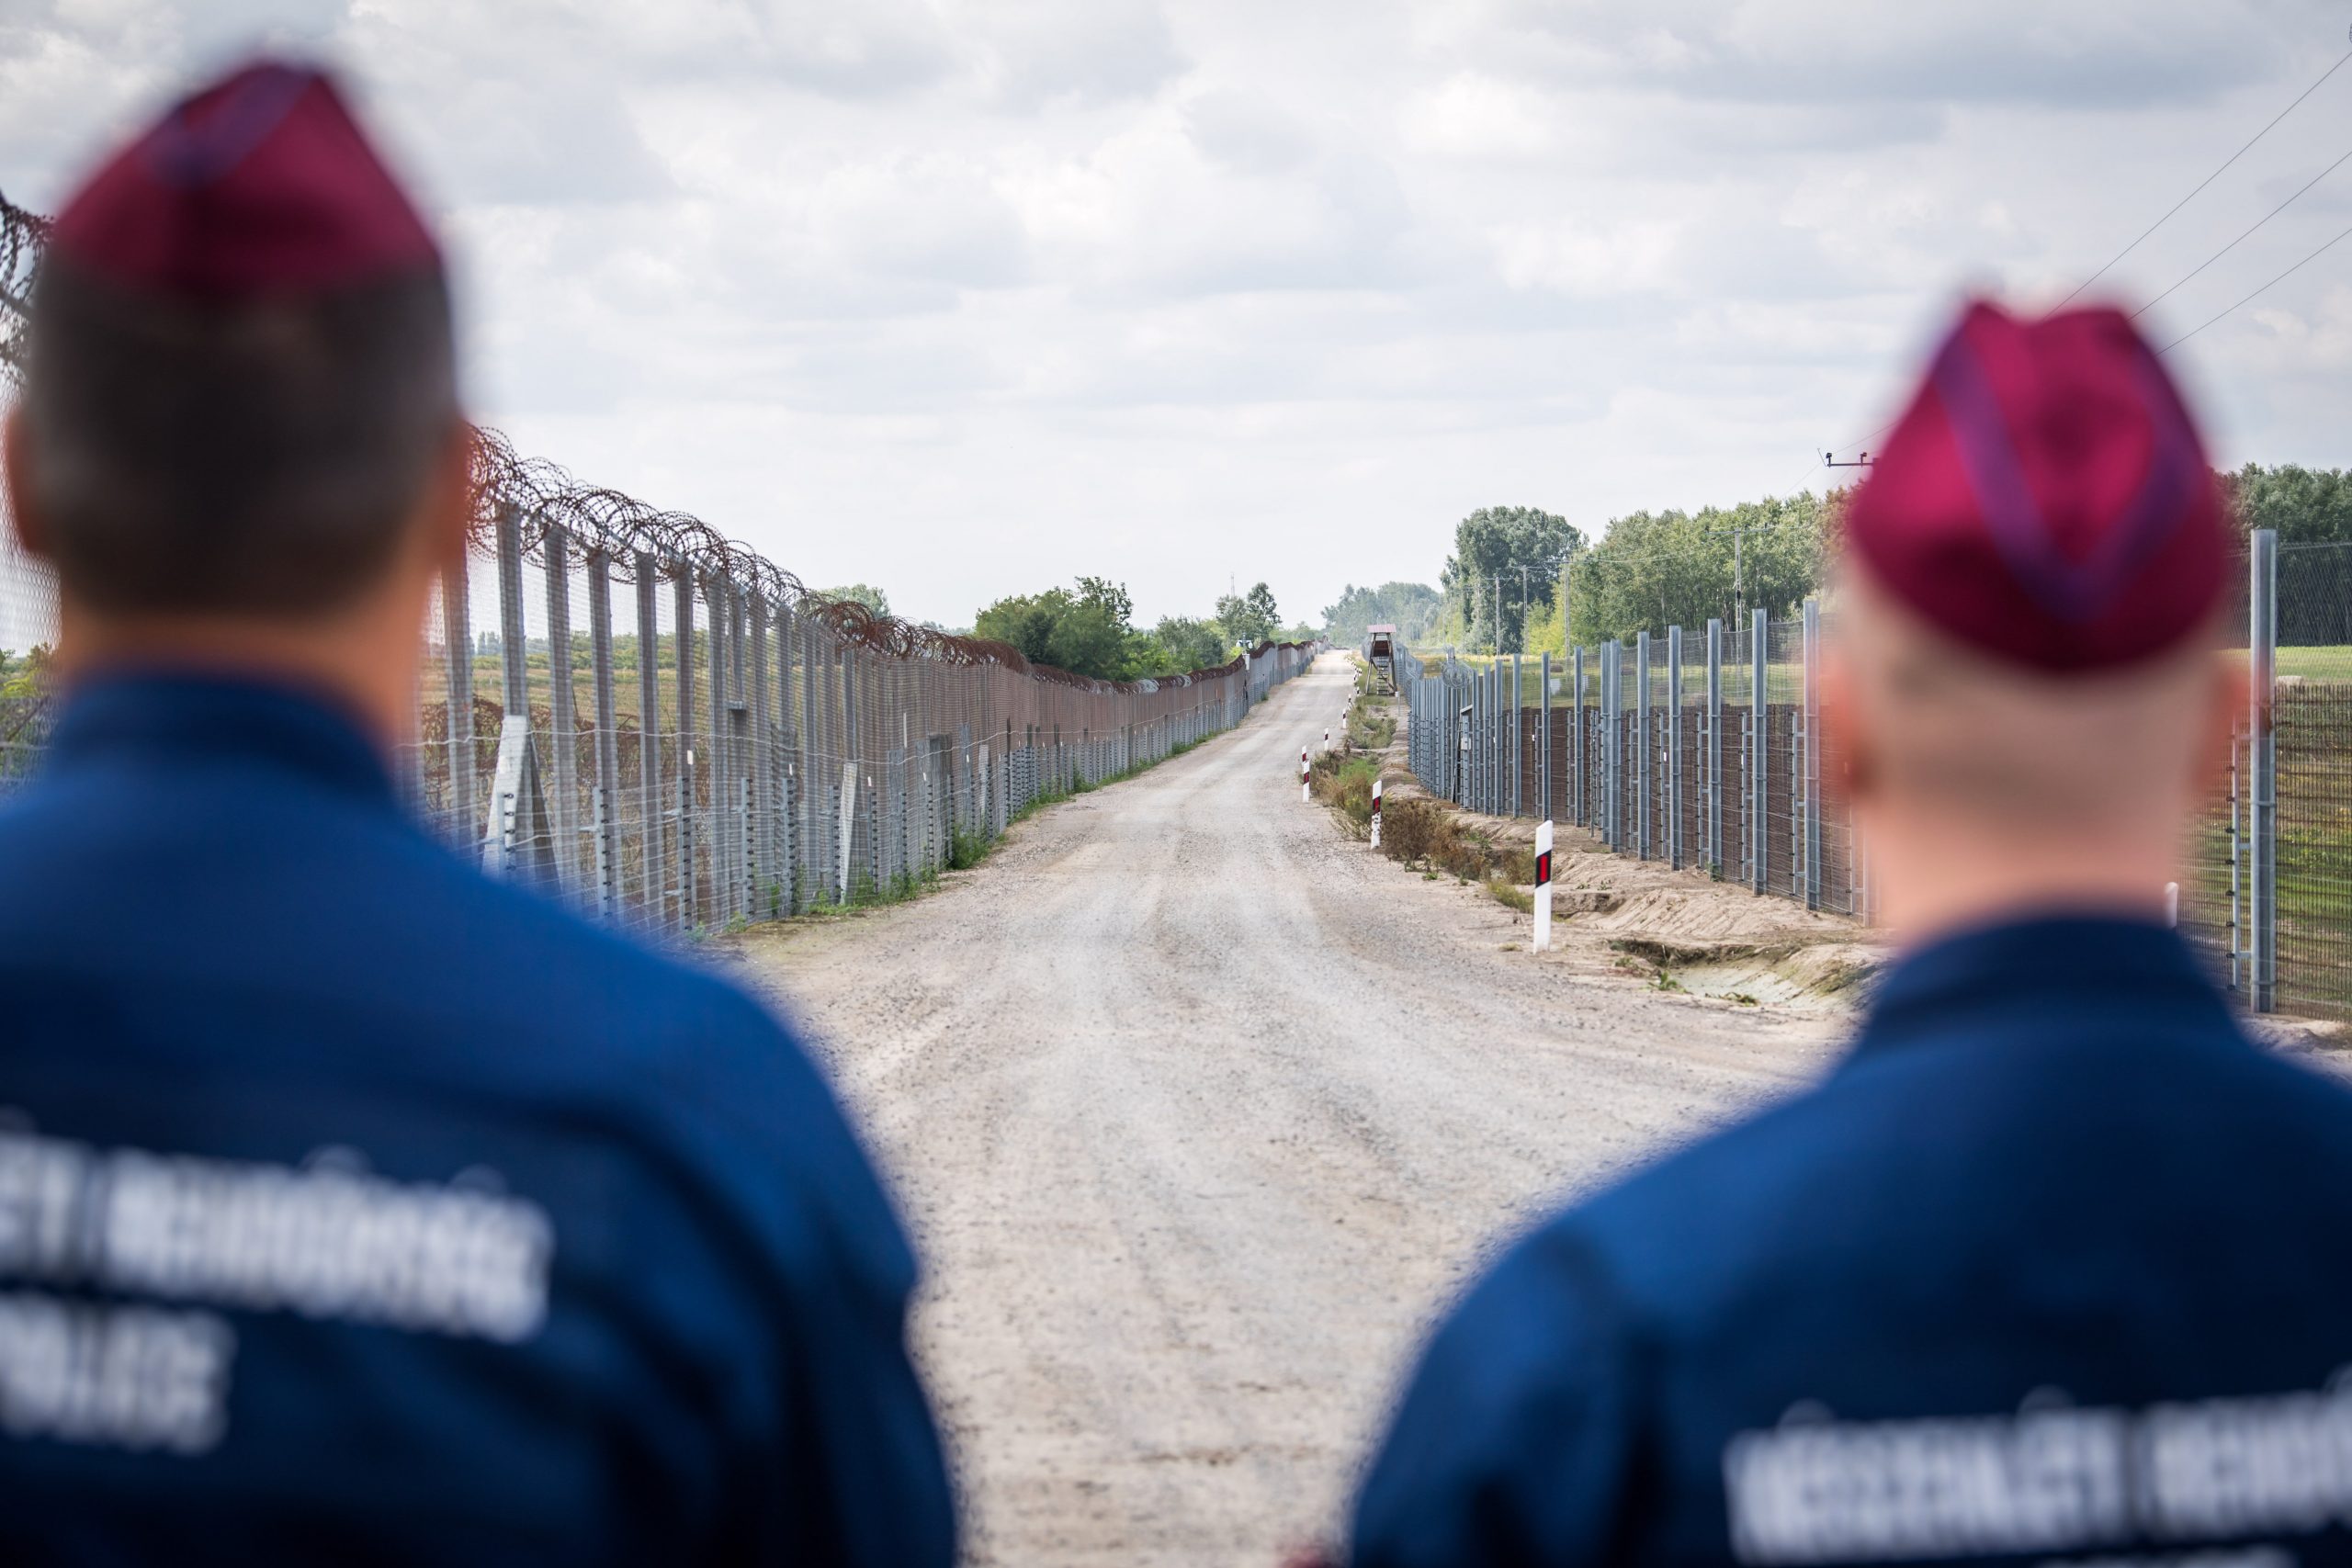 Ungarische Polizei hatte gestern mit mehr als 800 Migranten zu tun